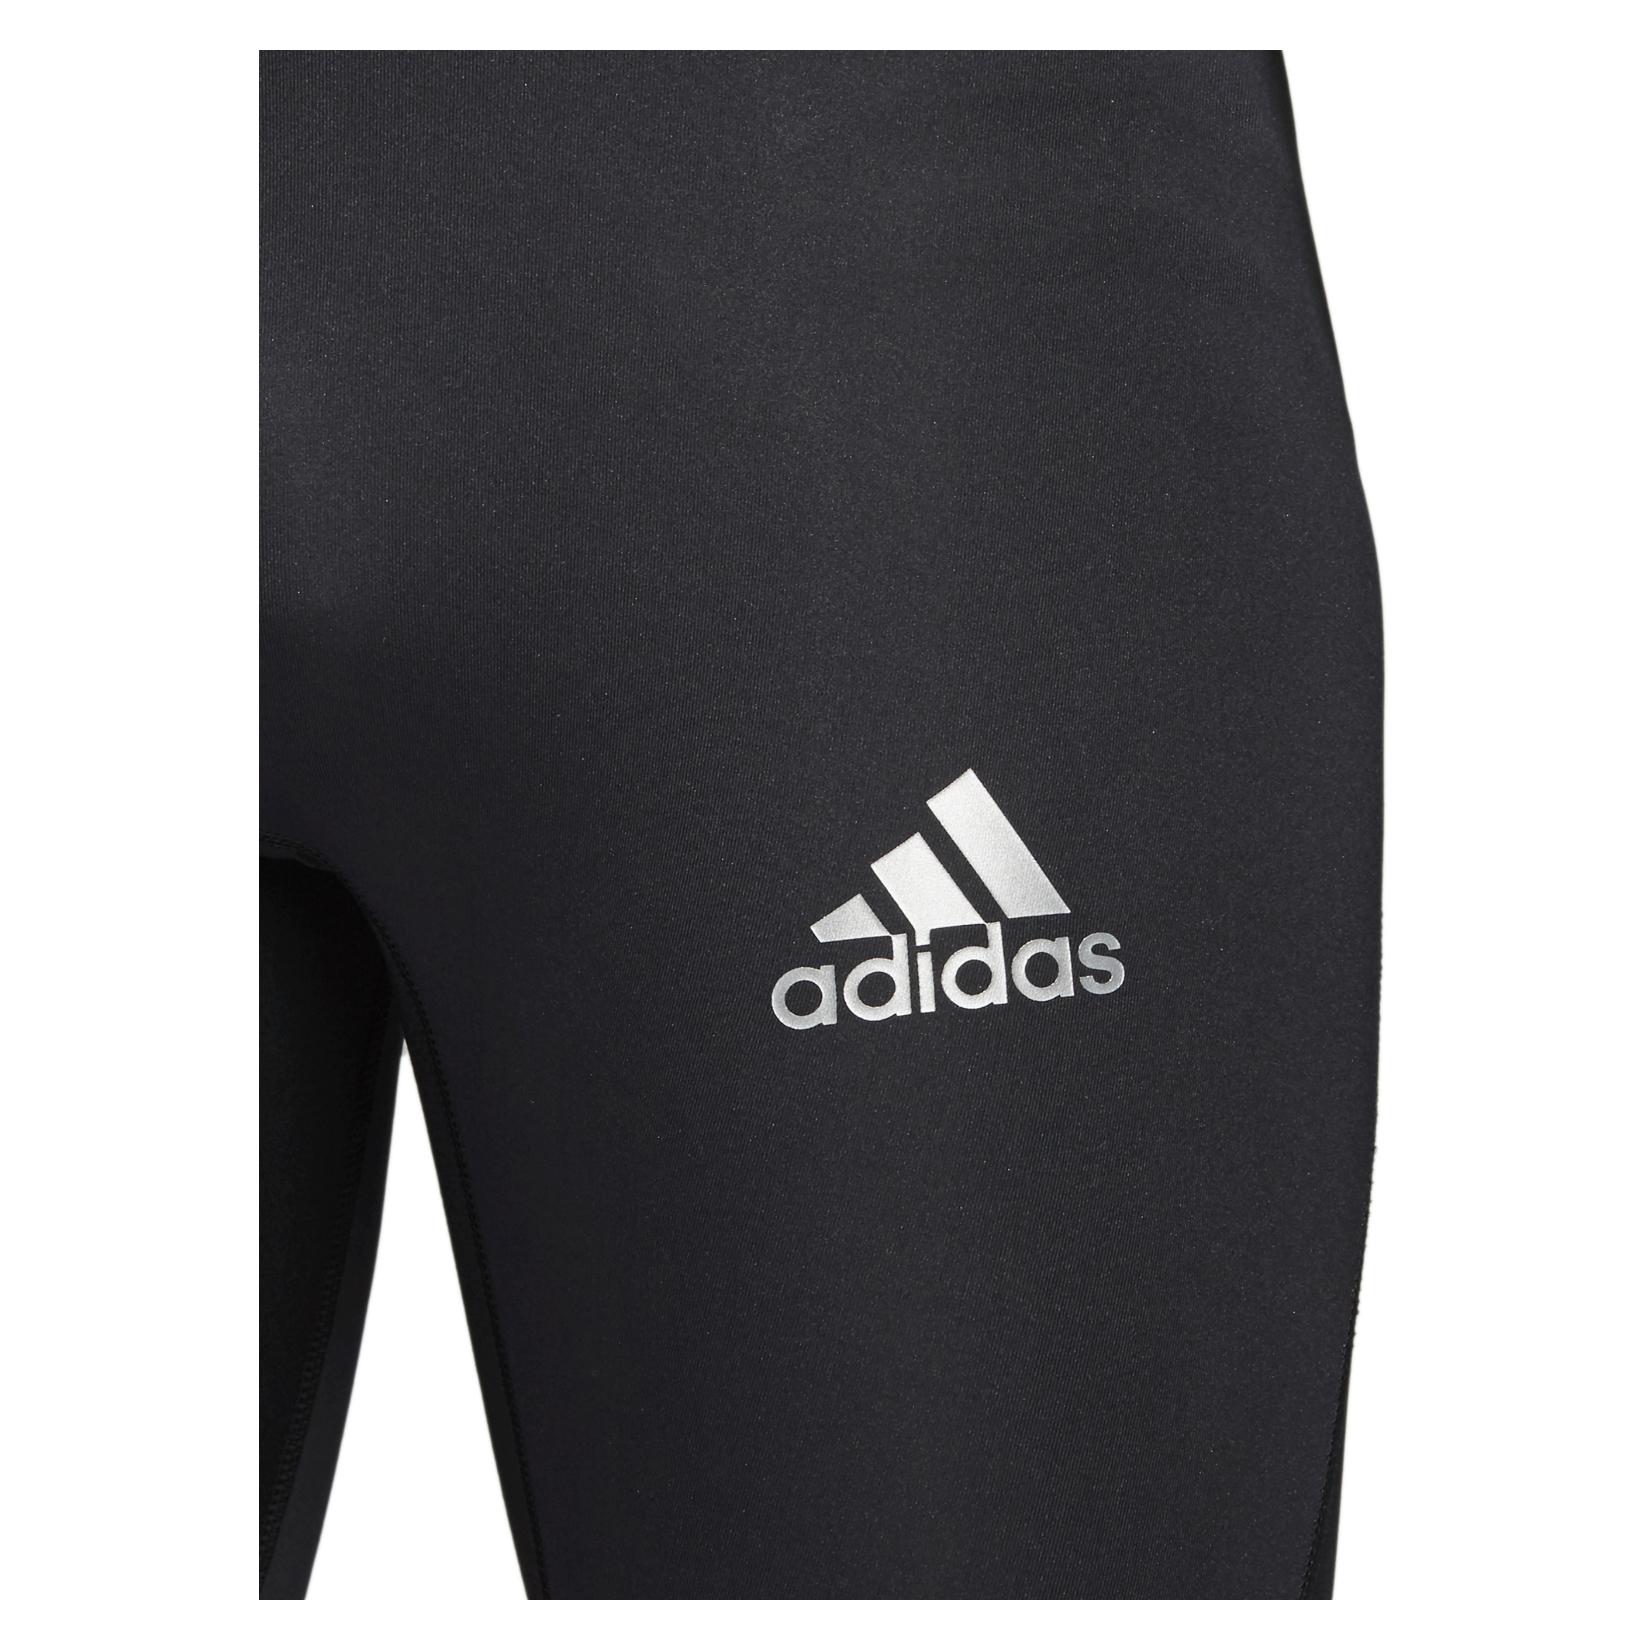 Adidas ALPHASKIN SHORT TIGHT Black